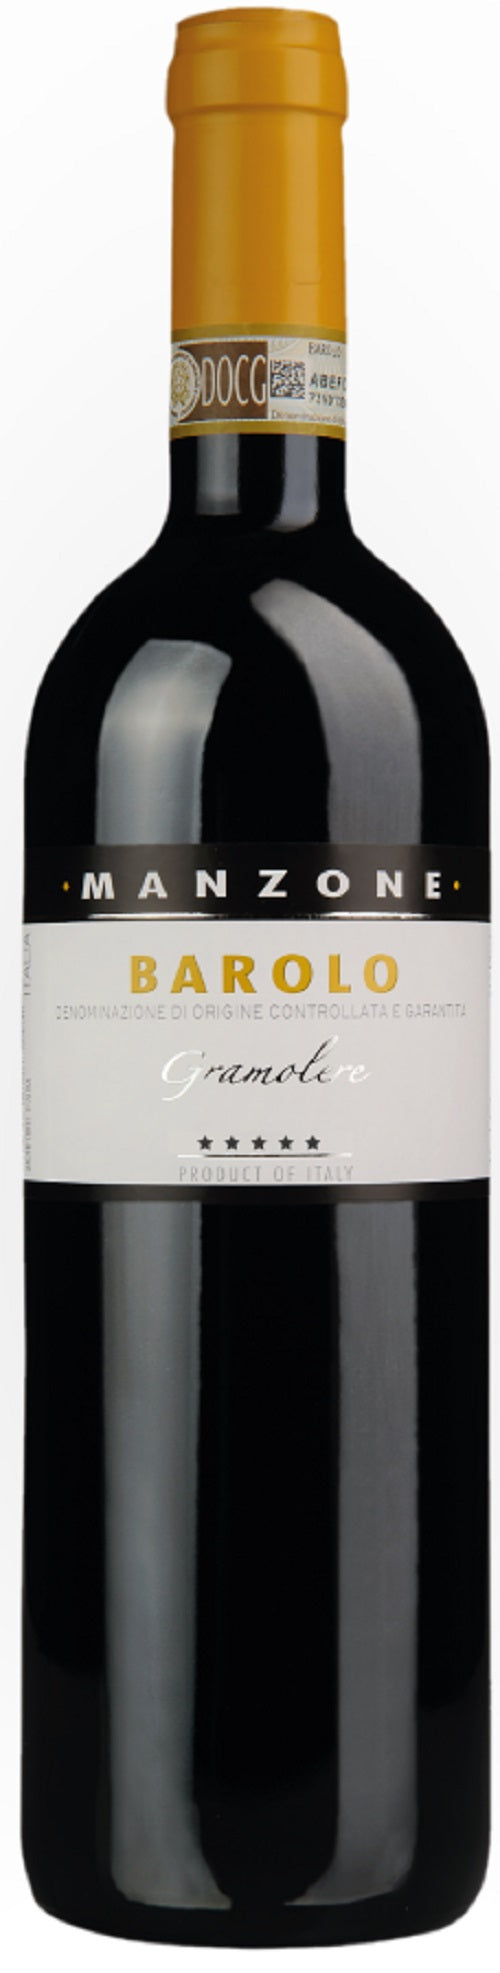 Giovanni Manzone Barolo le Gramolere 2015